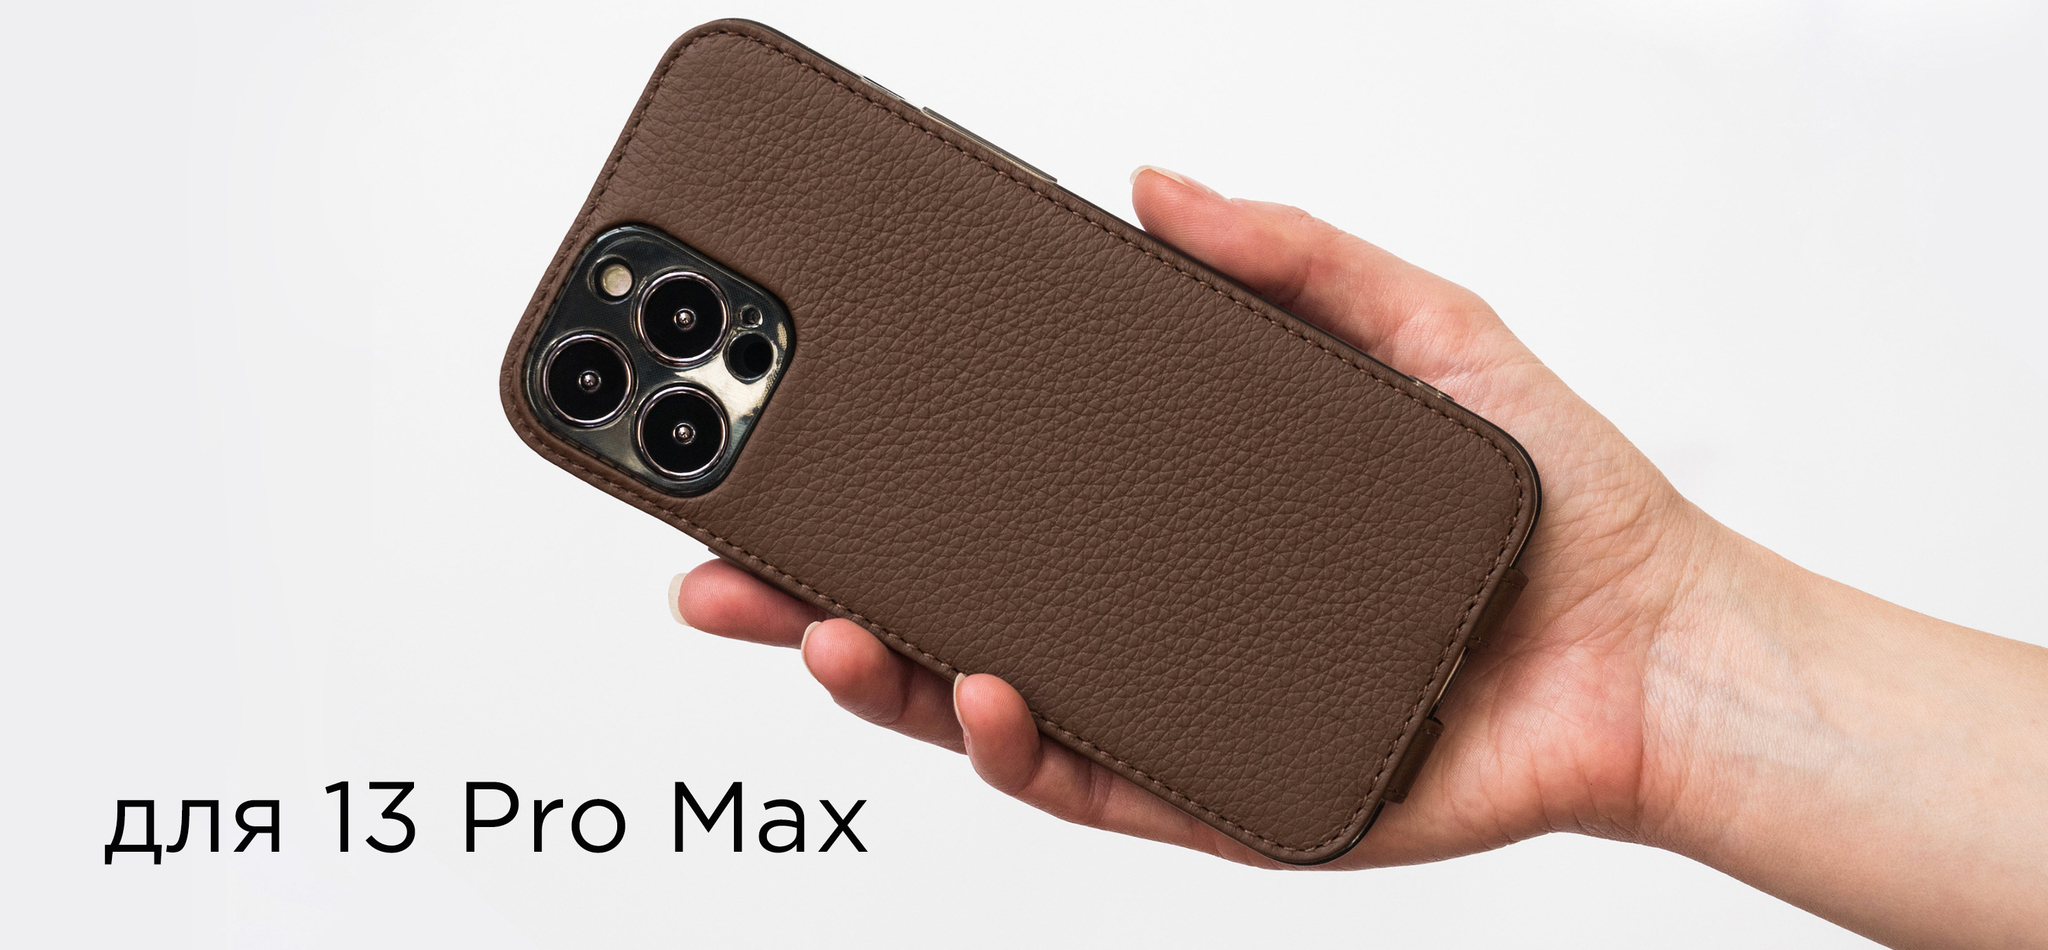 Чехлы для IPhone 13 Pro Max премиум класса, из натуральной кожи!  Эксклюзивная ручная работа!